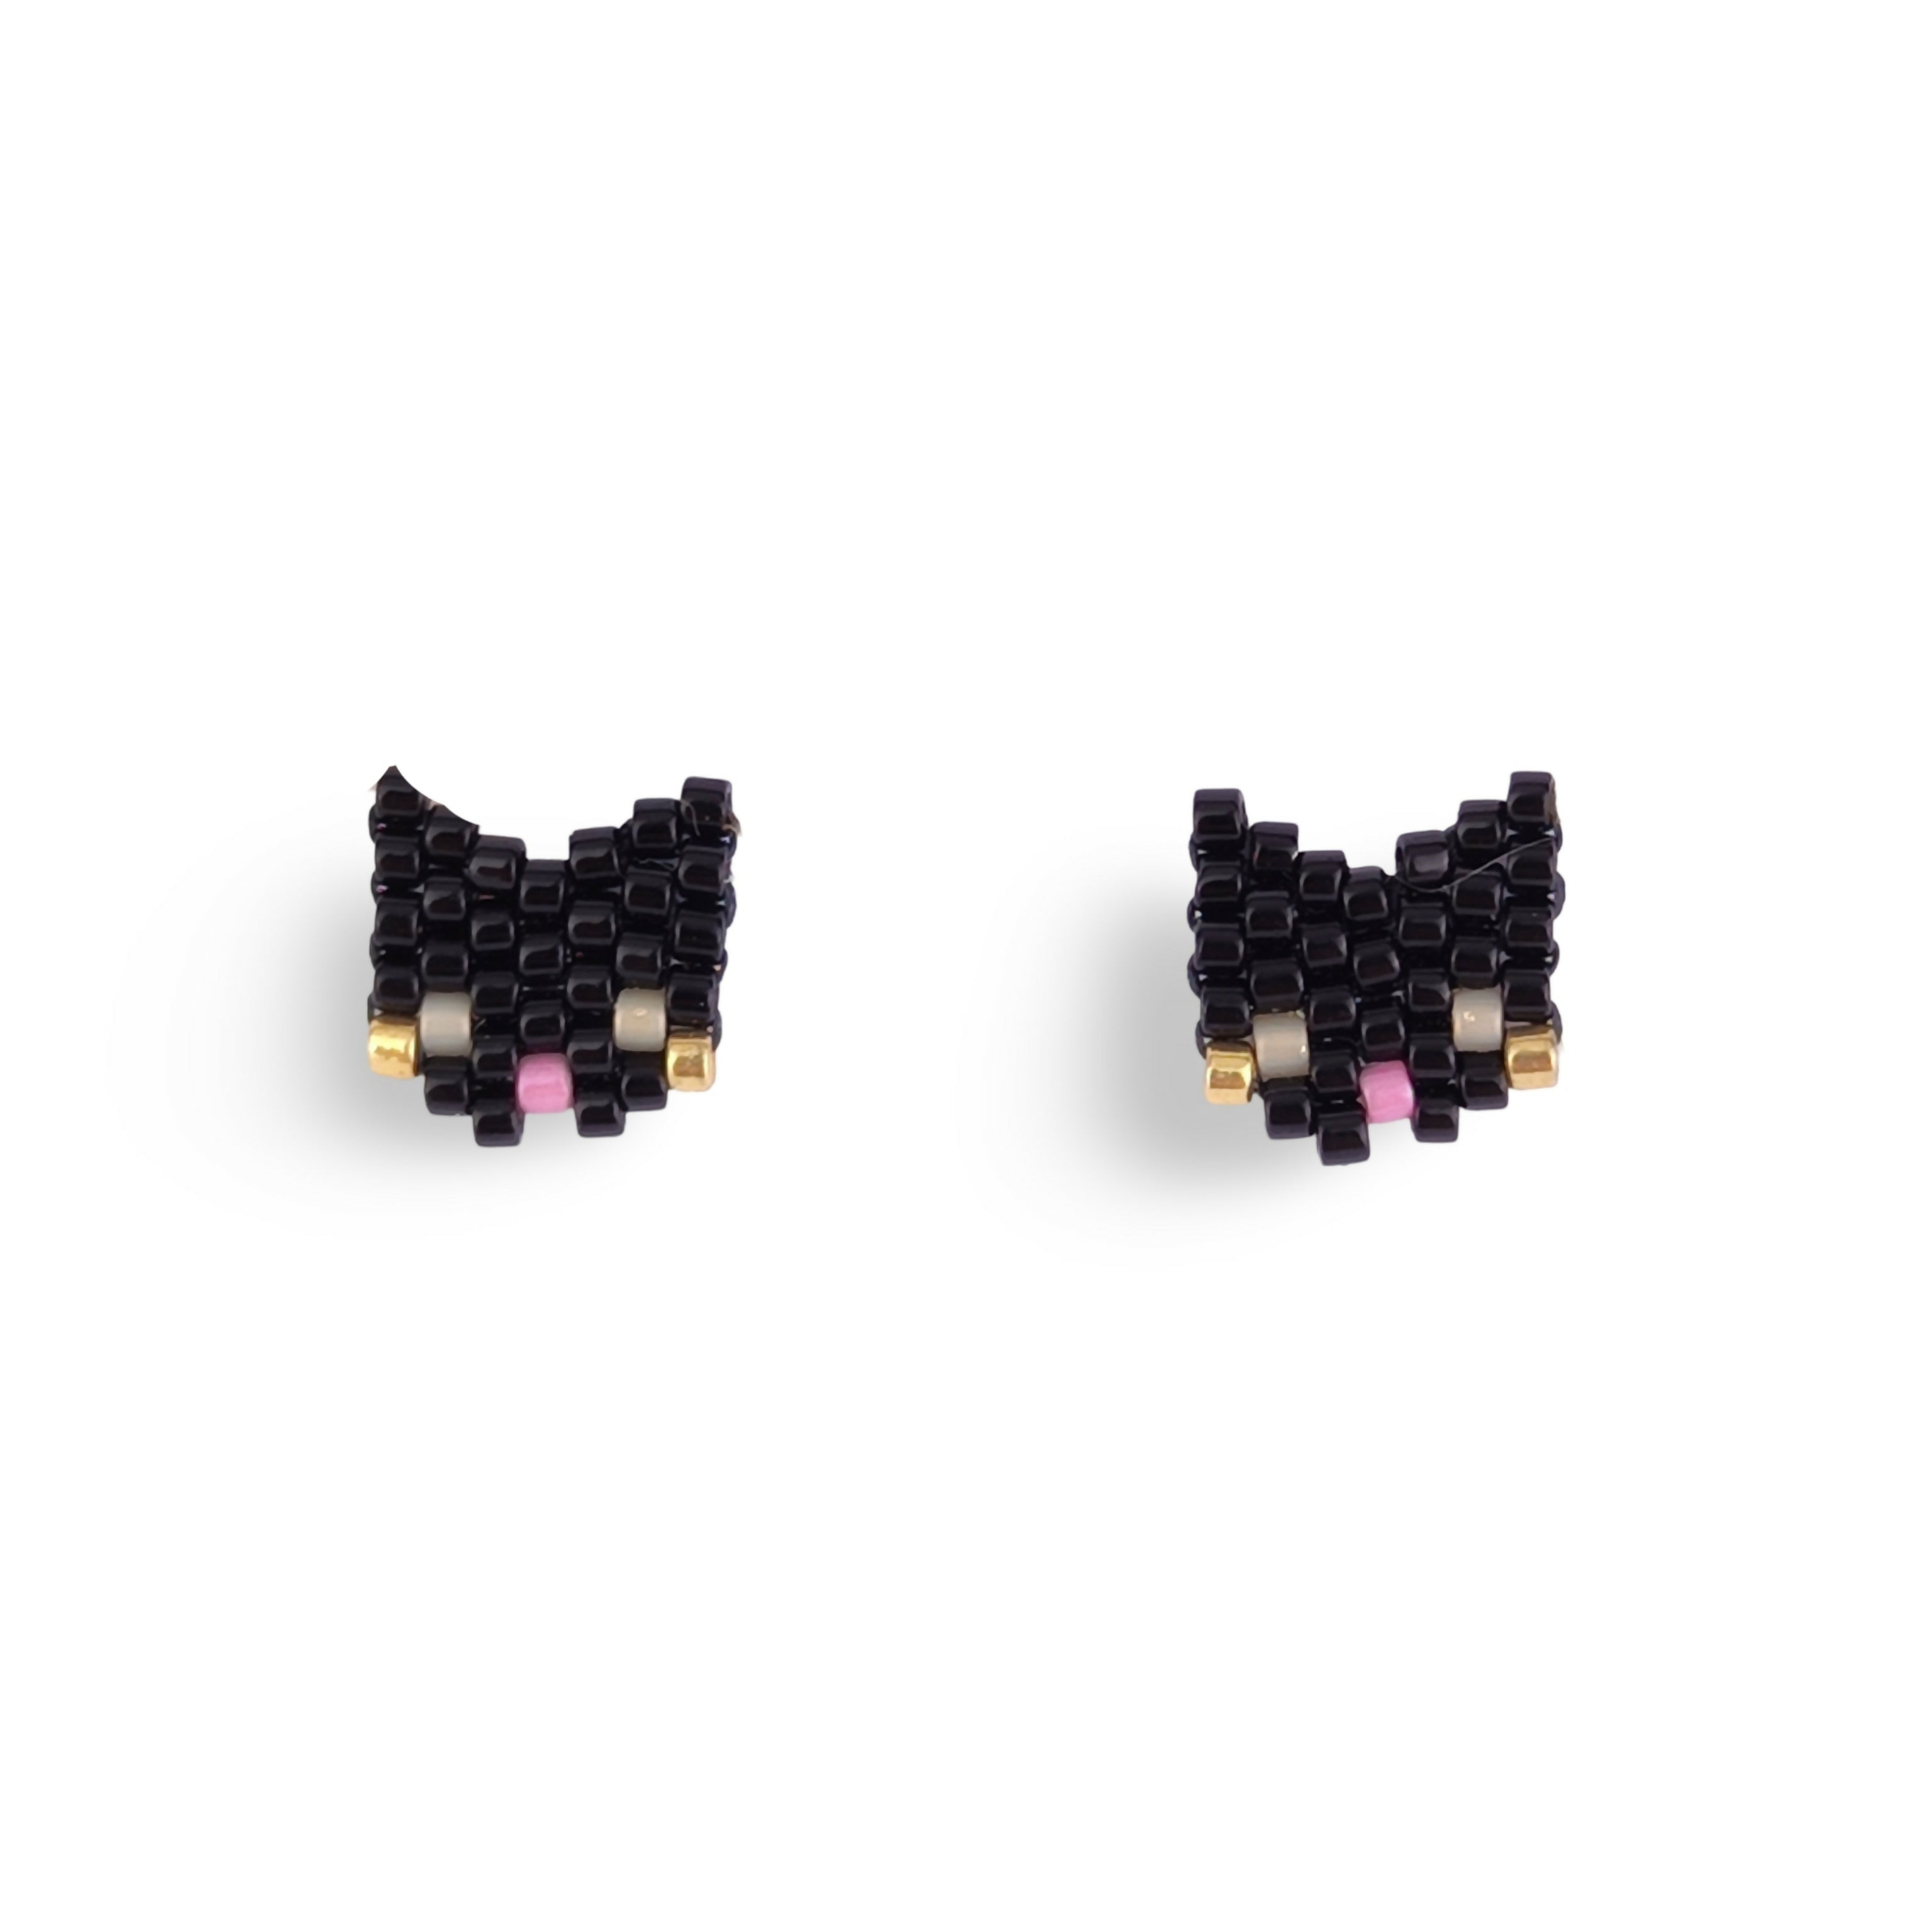 Handwoven Beaded Stud Earrings - Cats / Kittens